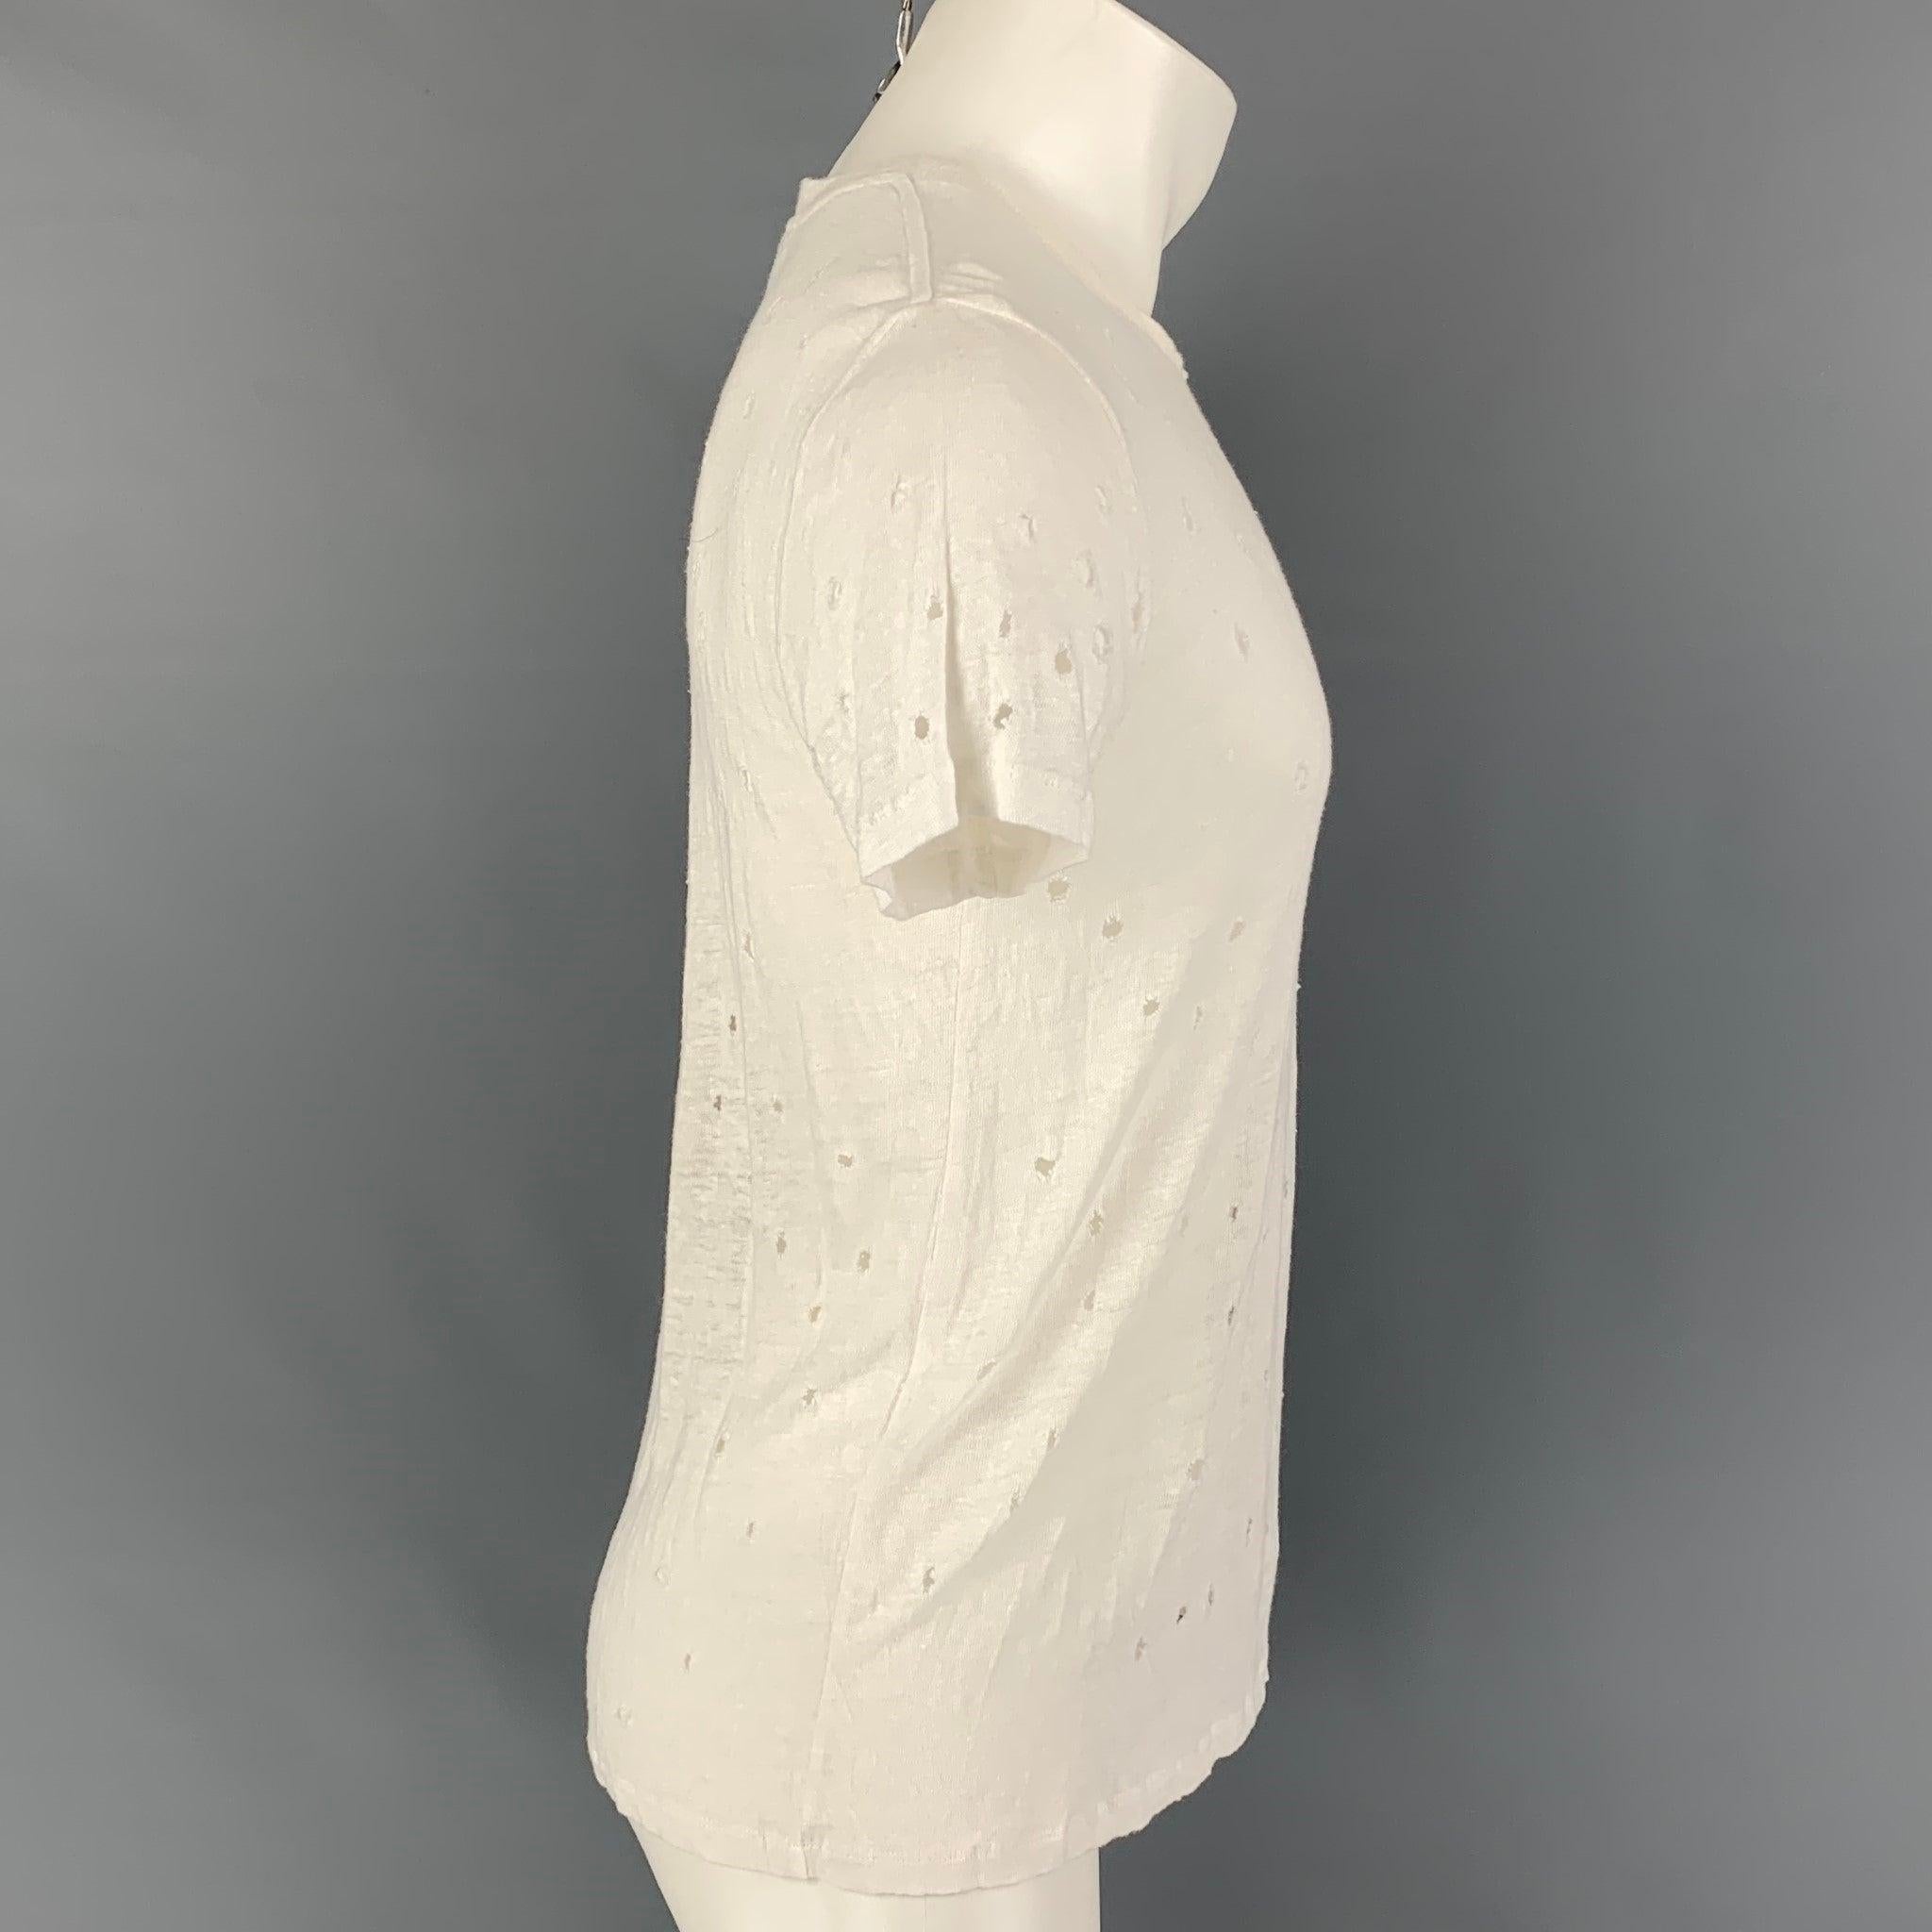 Le t-shirt 'Clay' d'Iro se présente en lin blanc avec des détails en relief et une encolure ras du cou. Fabriqué au Portugal.
Très bon état d'origine.  

Marqué :   M 

Mesures : 
 
Épaule : 18 pouces  Poitrine : 38 pouces  Manches : 8 pouces